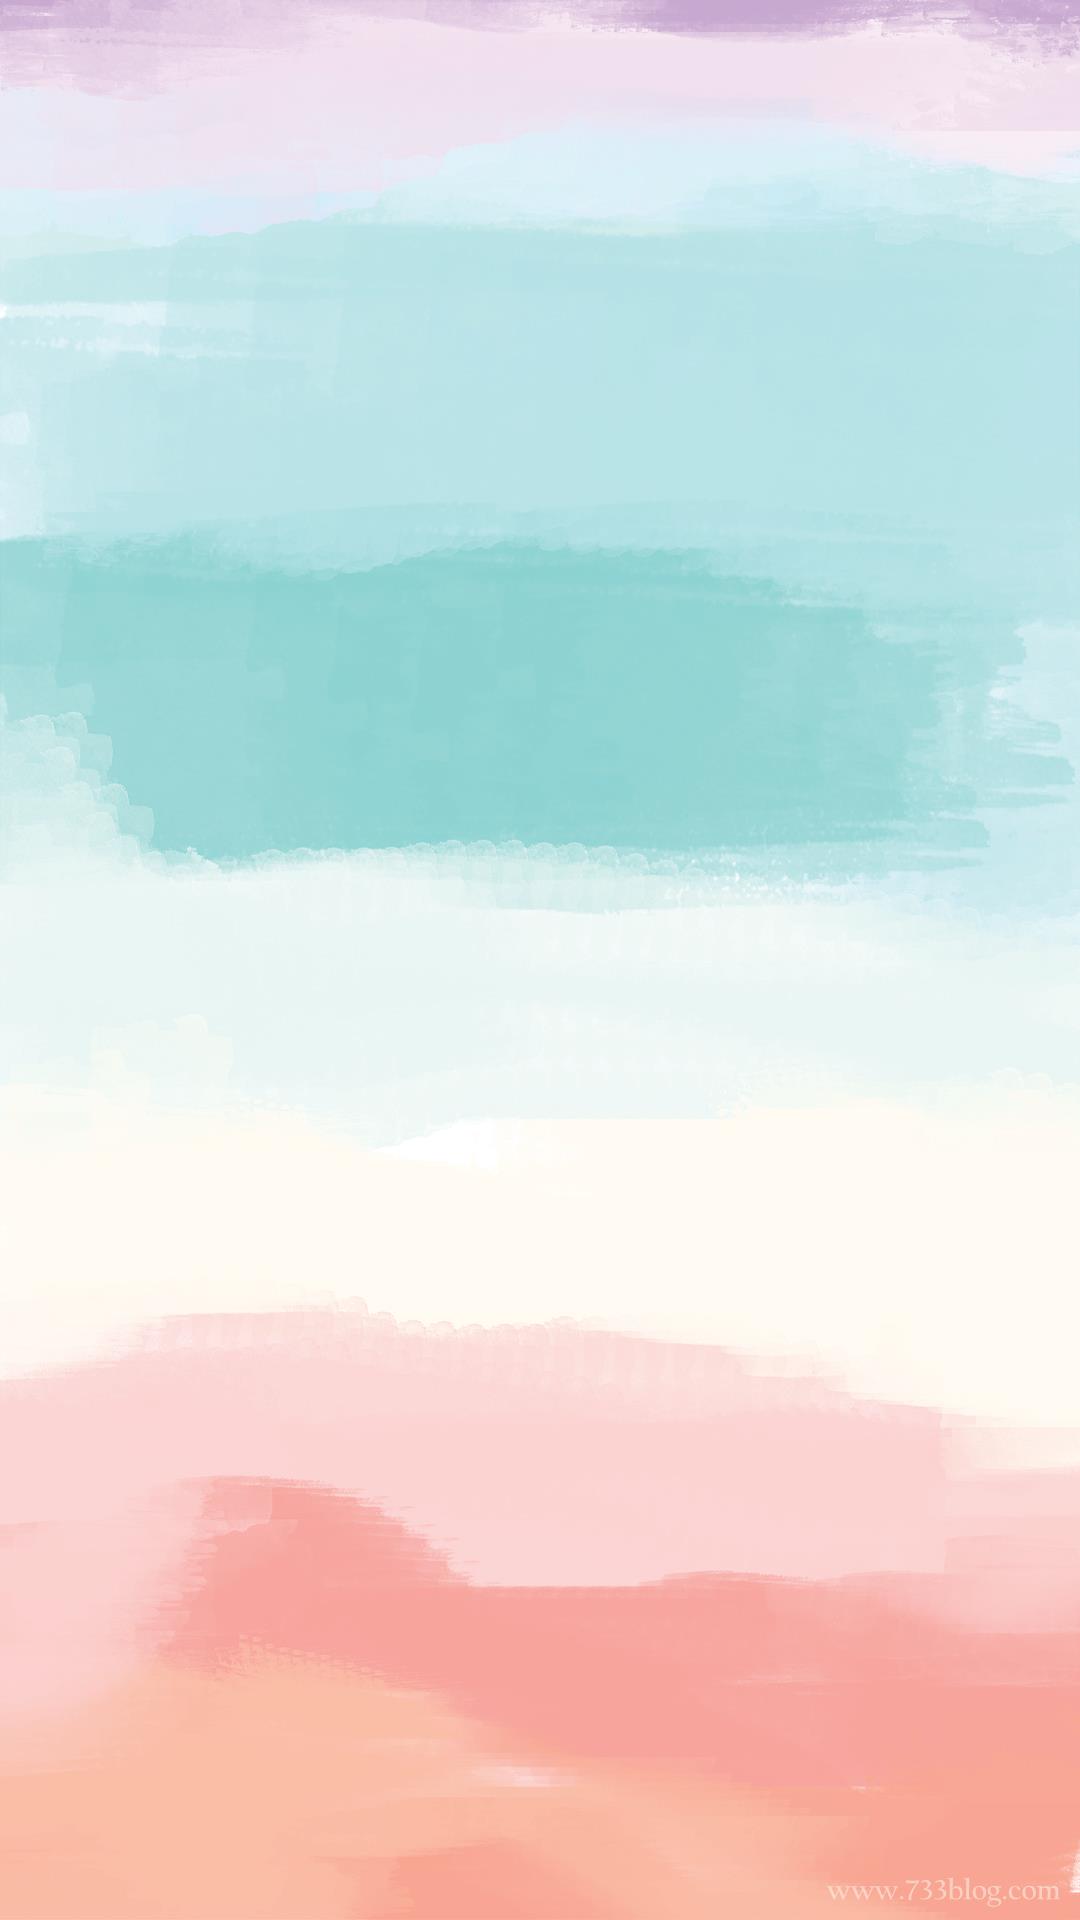 fond d'écran aquarelle iphone,ciel,bleu,rose,jour,aqua